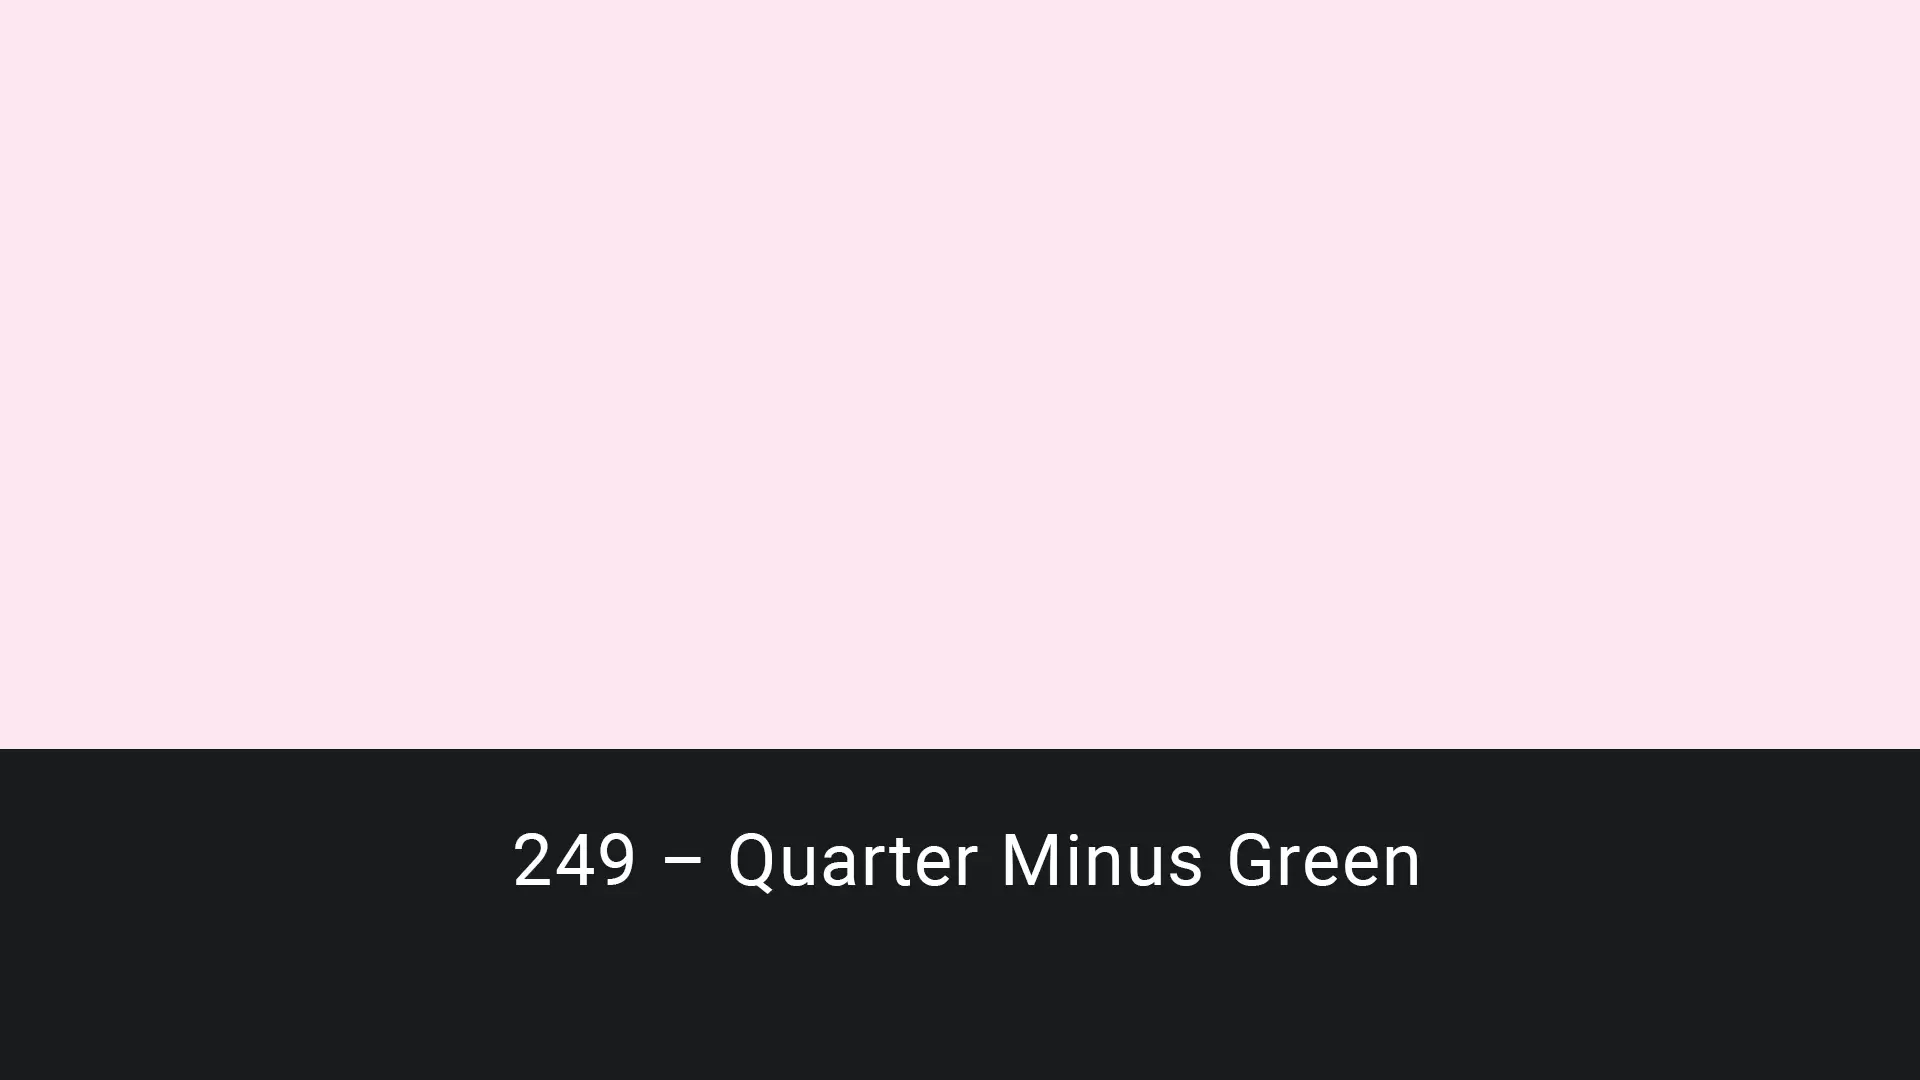 Cotech filters 249 Quarter Minus Green